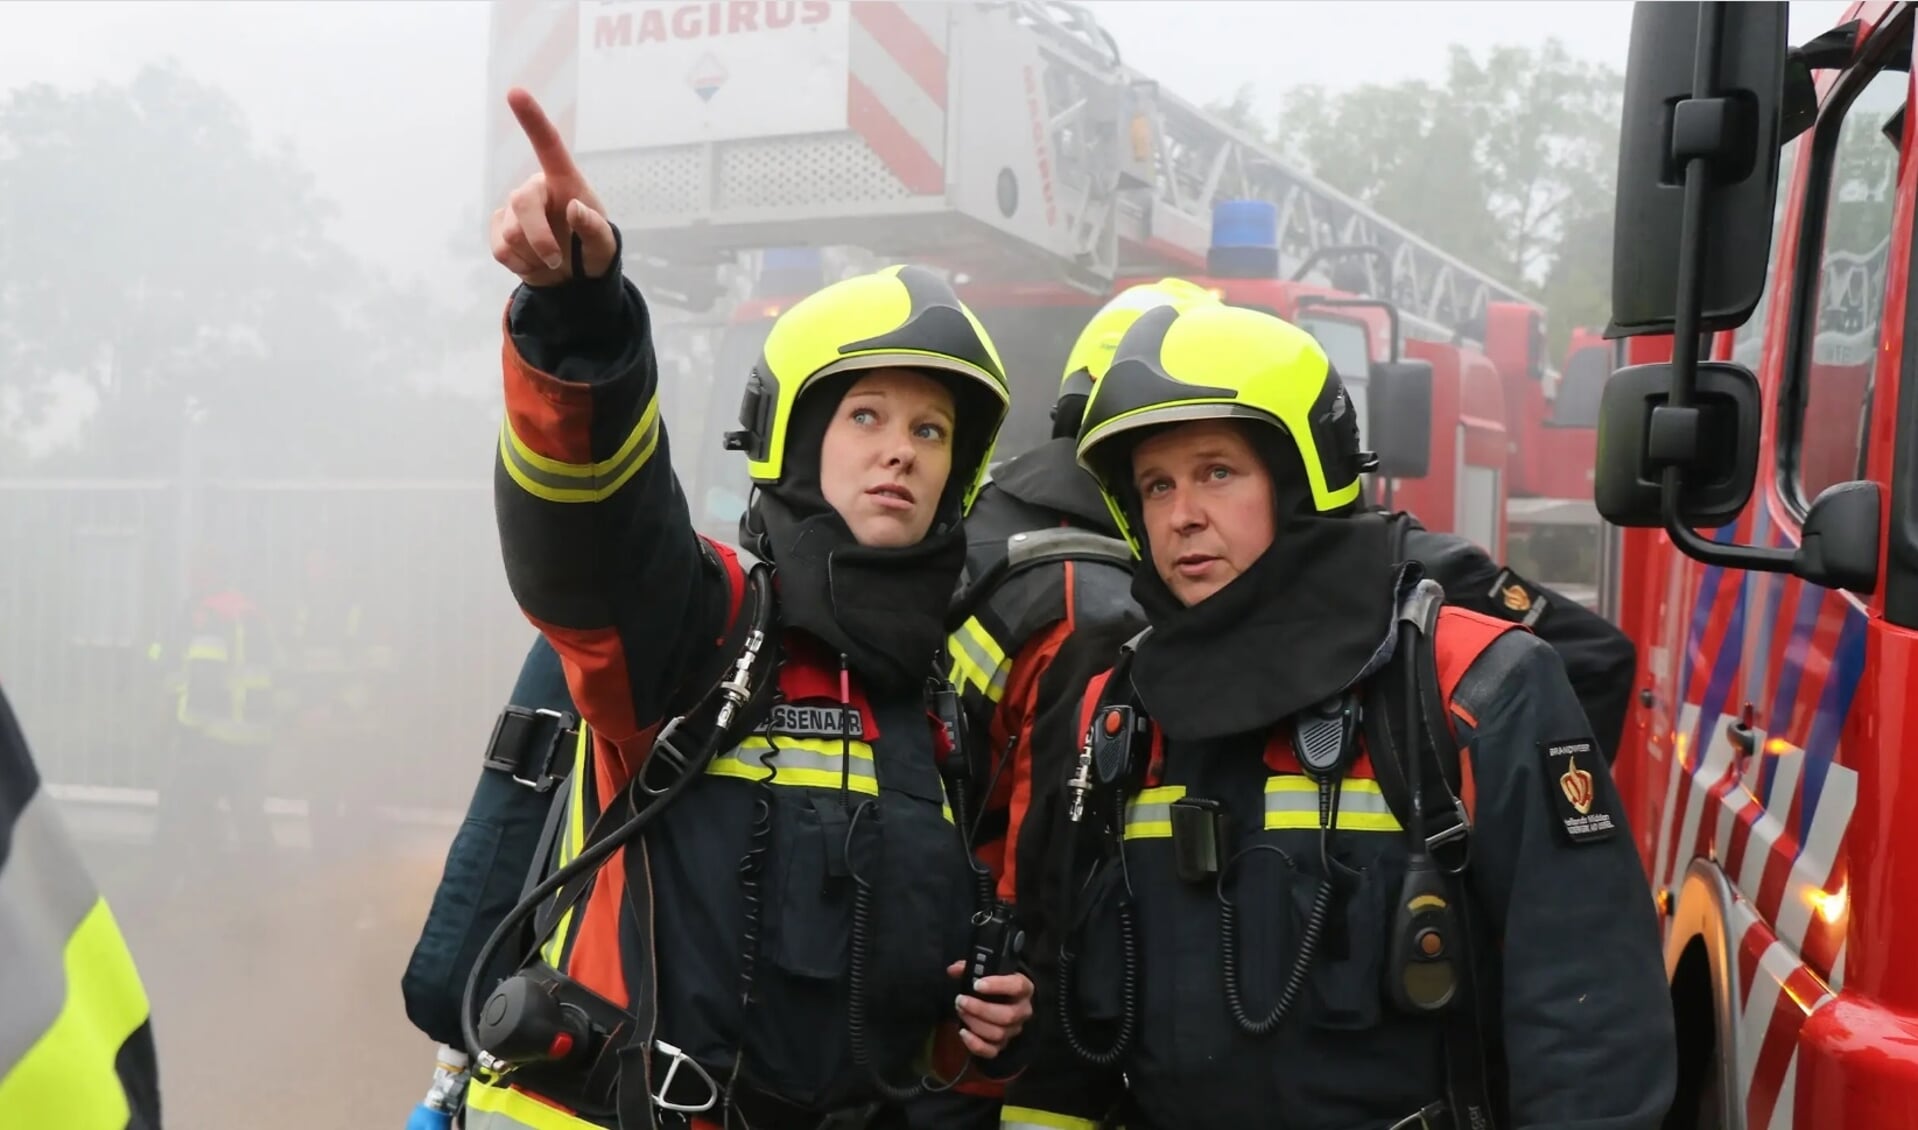 Brandweerlieden betekenen iets voor de maatschappij. | Foto: pr.